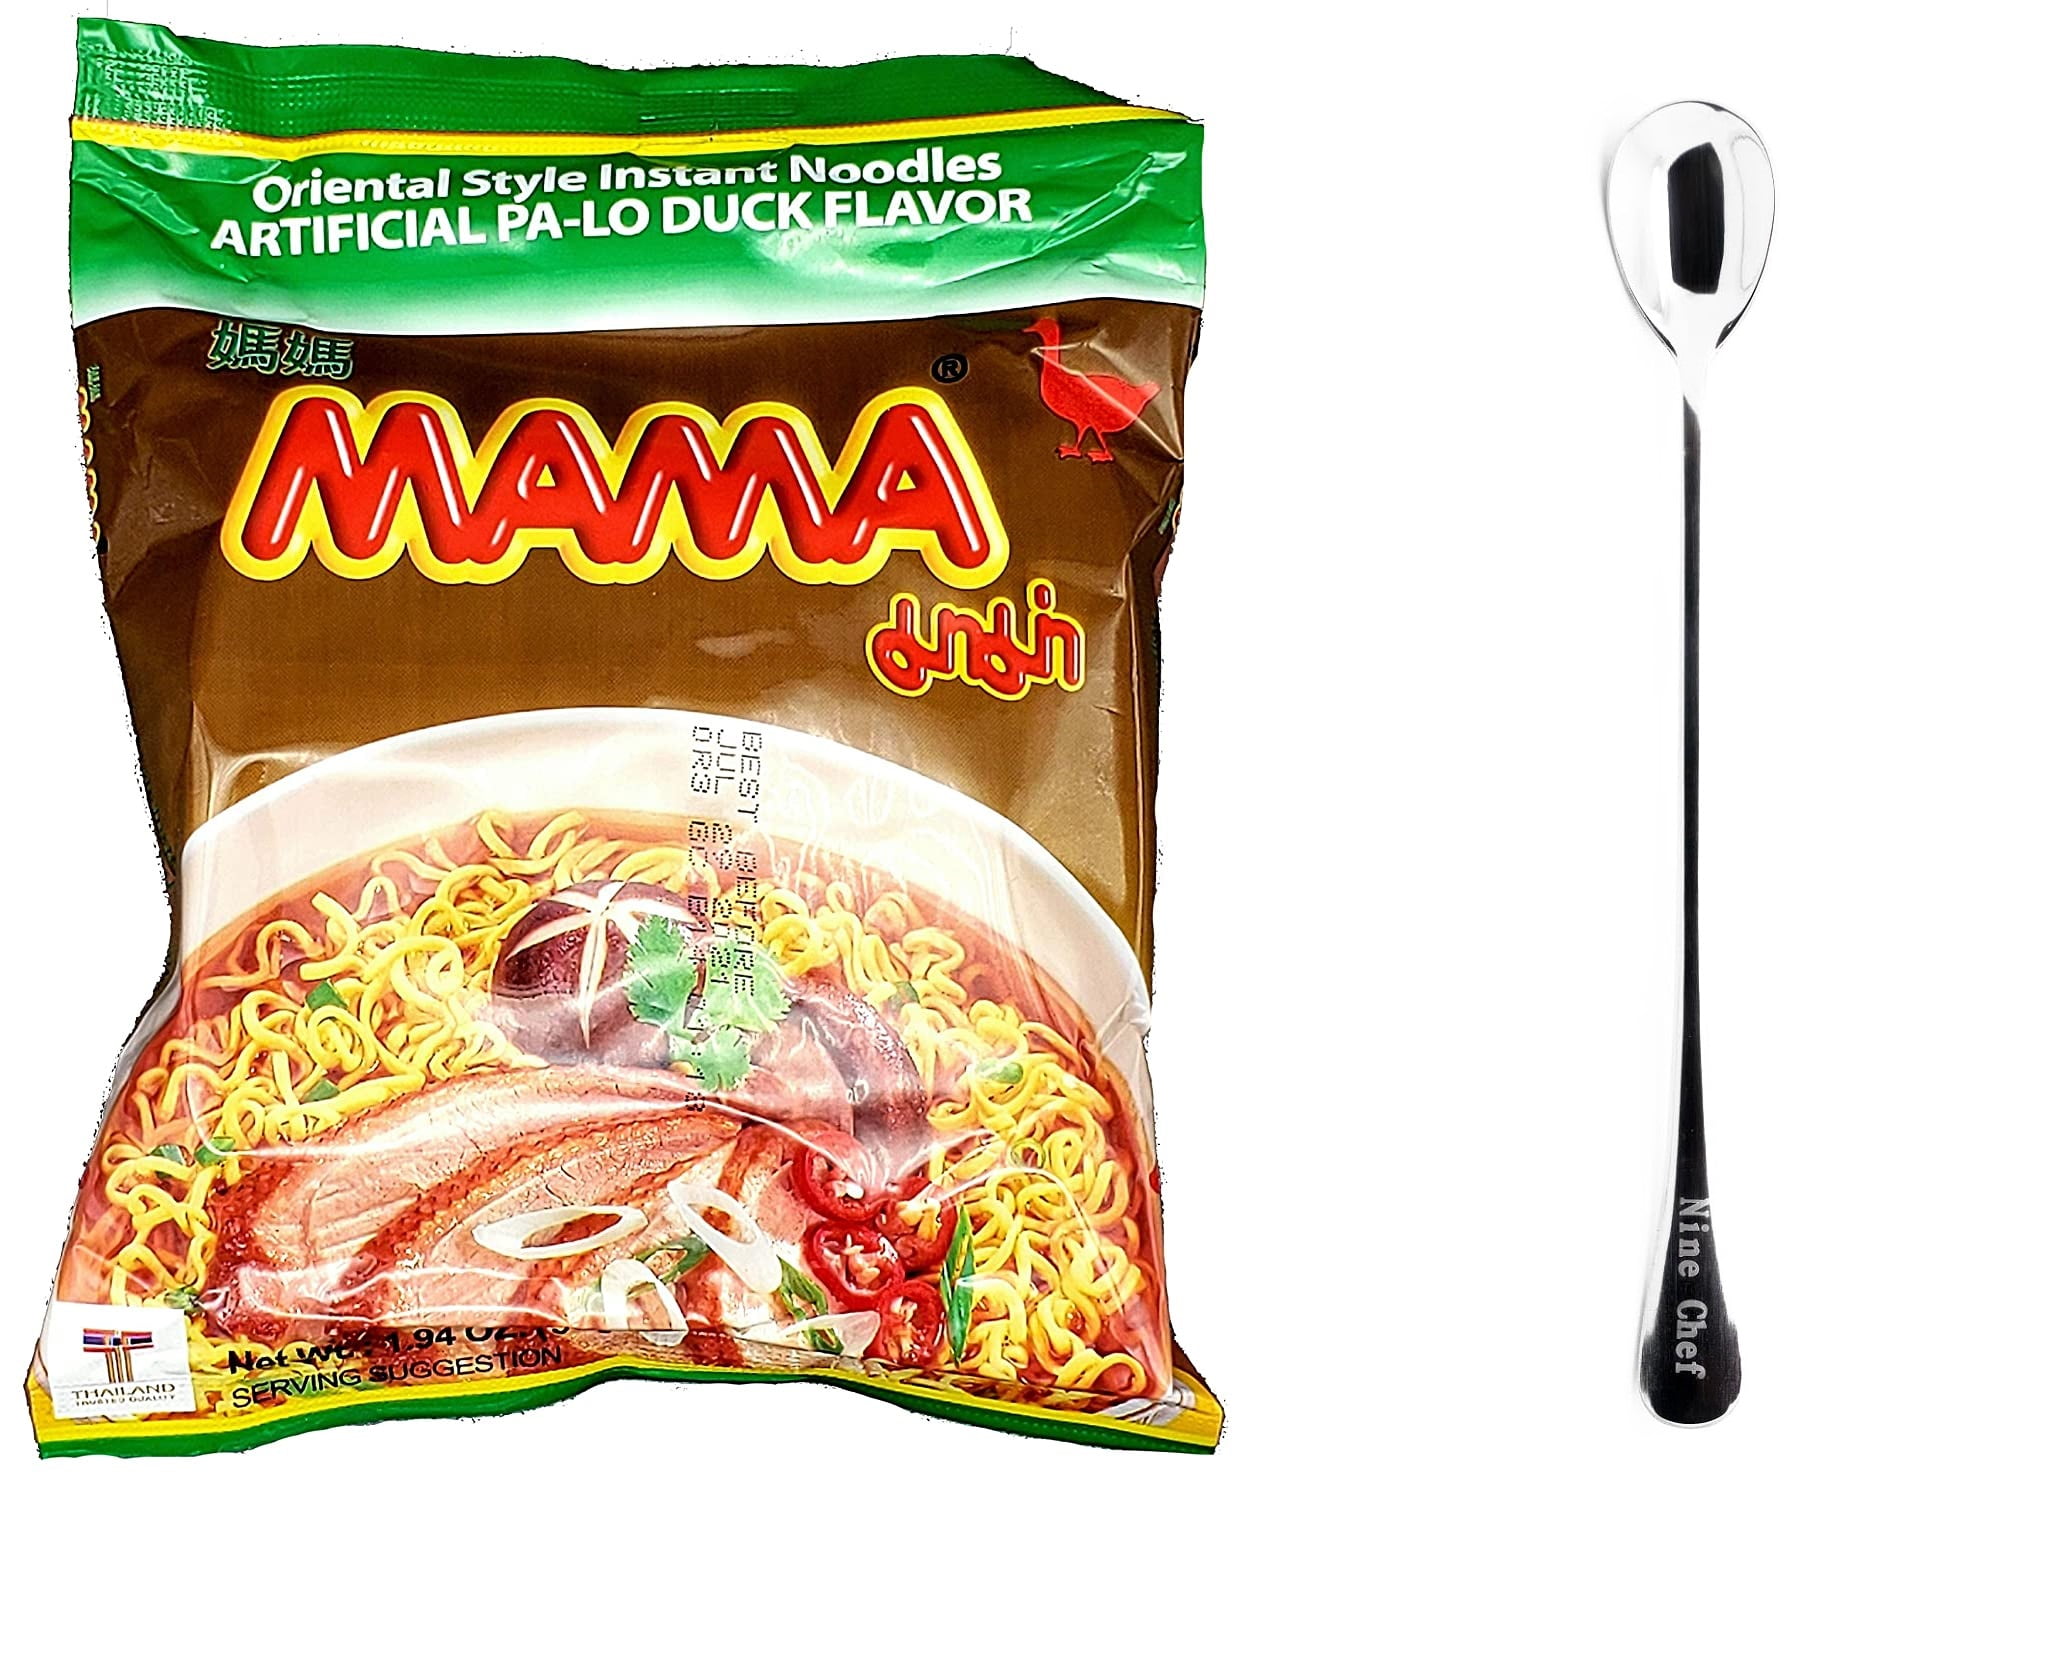 30 pack x 2.12oz] Mama Shrimp Tom Yum Thai Instant Hot & Sour Noodles Soup